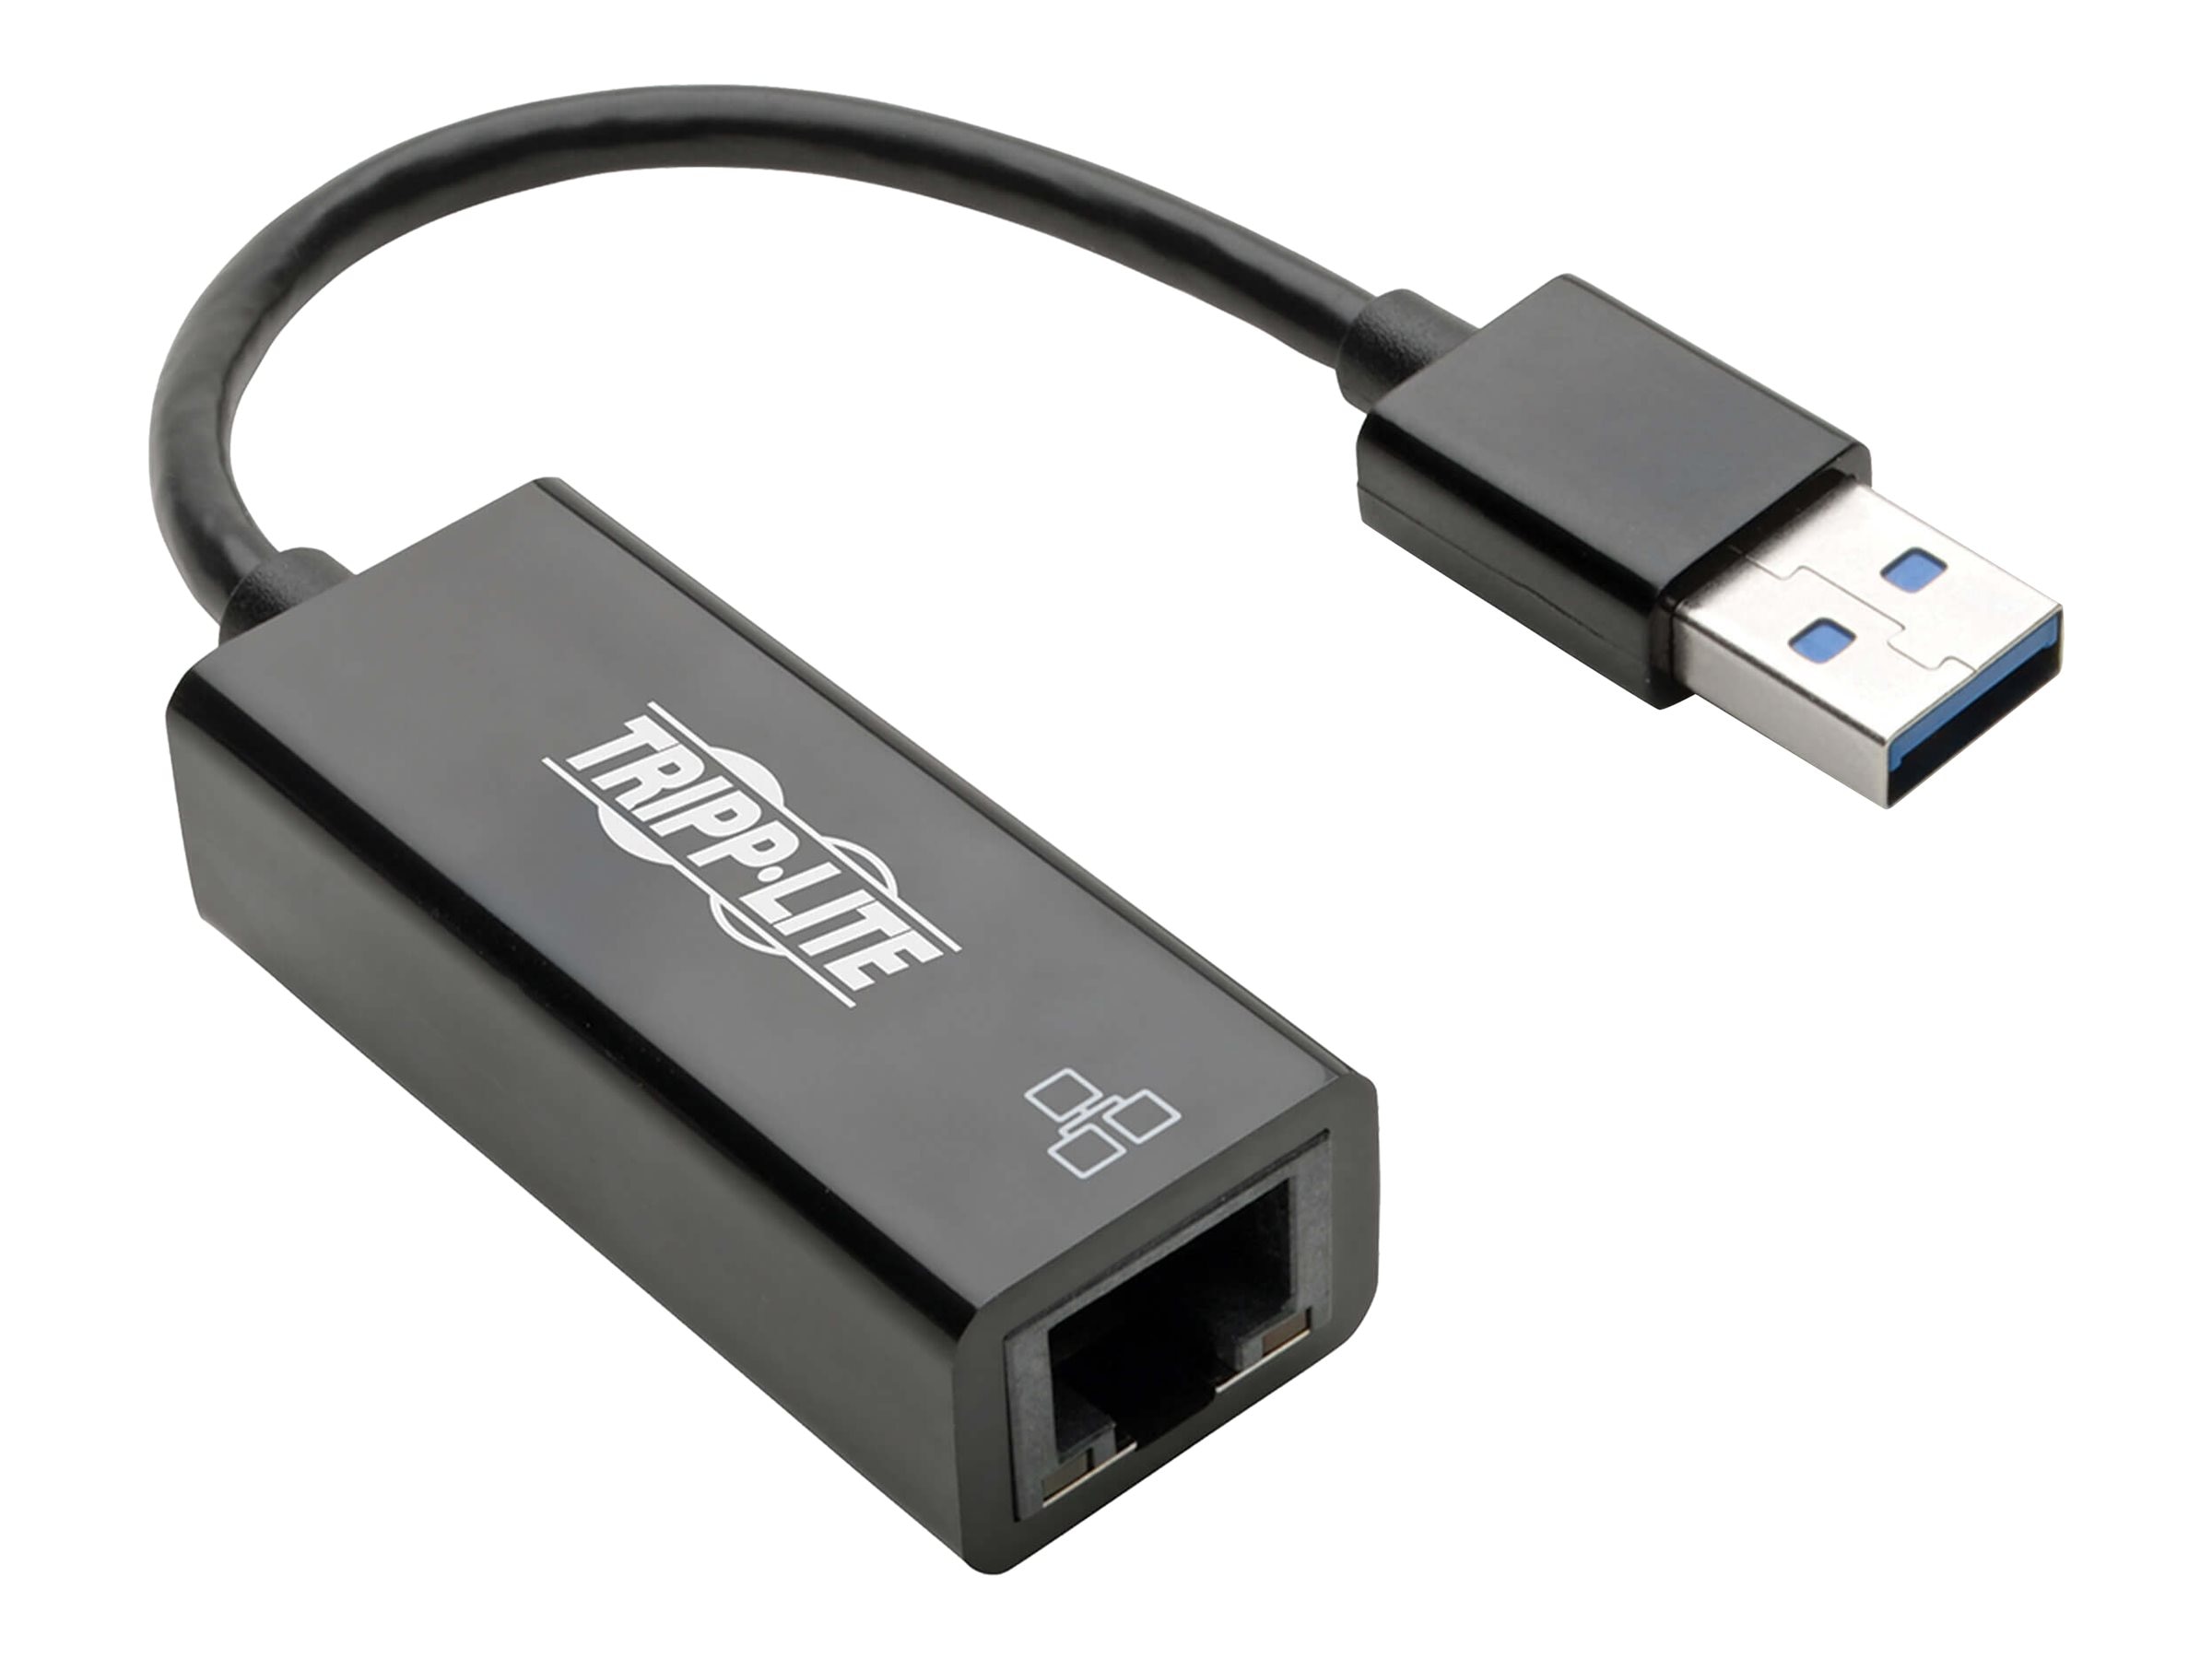 Marxisme Zelfrespect assistent Tripp Lite USB 3.0 to Gigabit Ethernet NIC Network Adapter - 10 (U336-000-R)